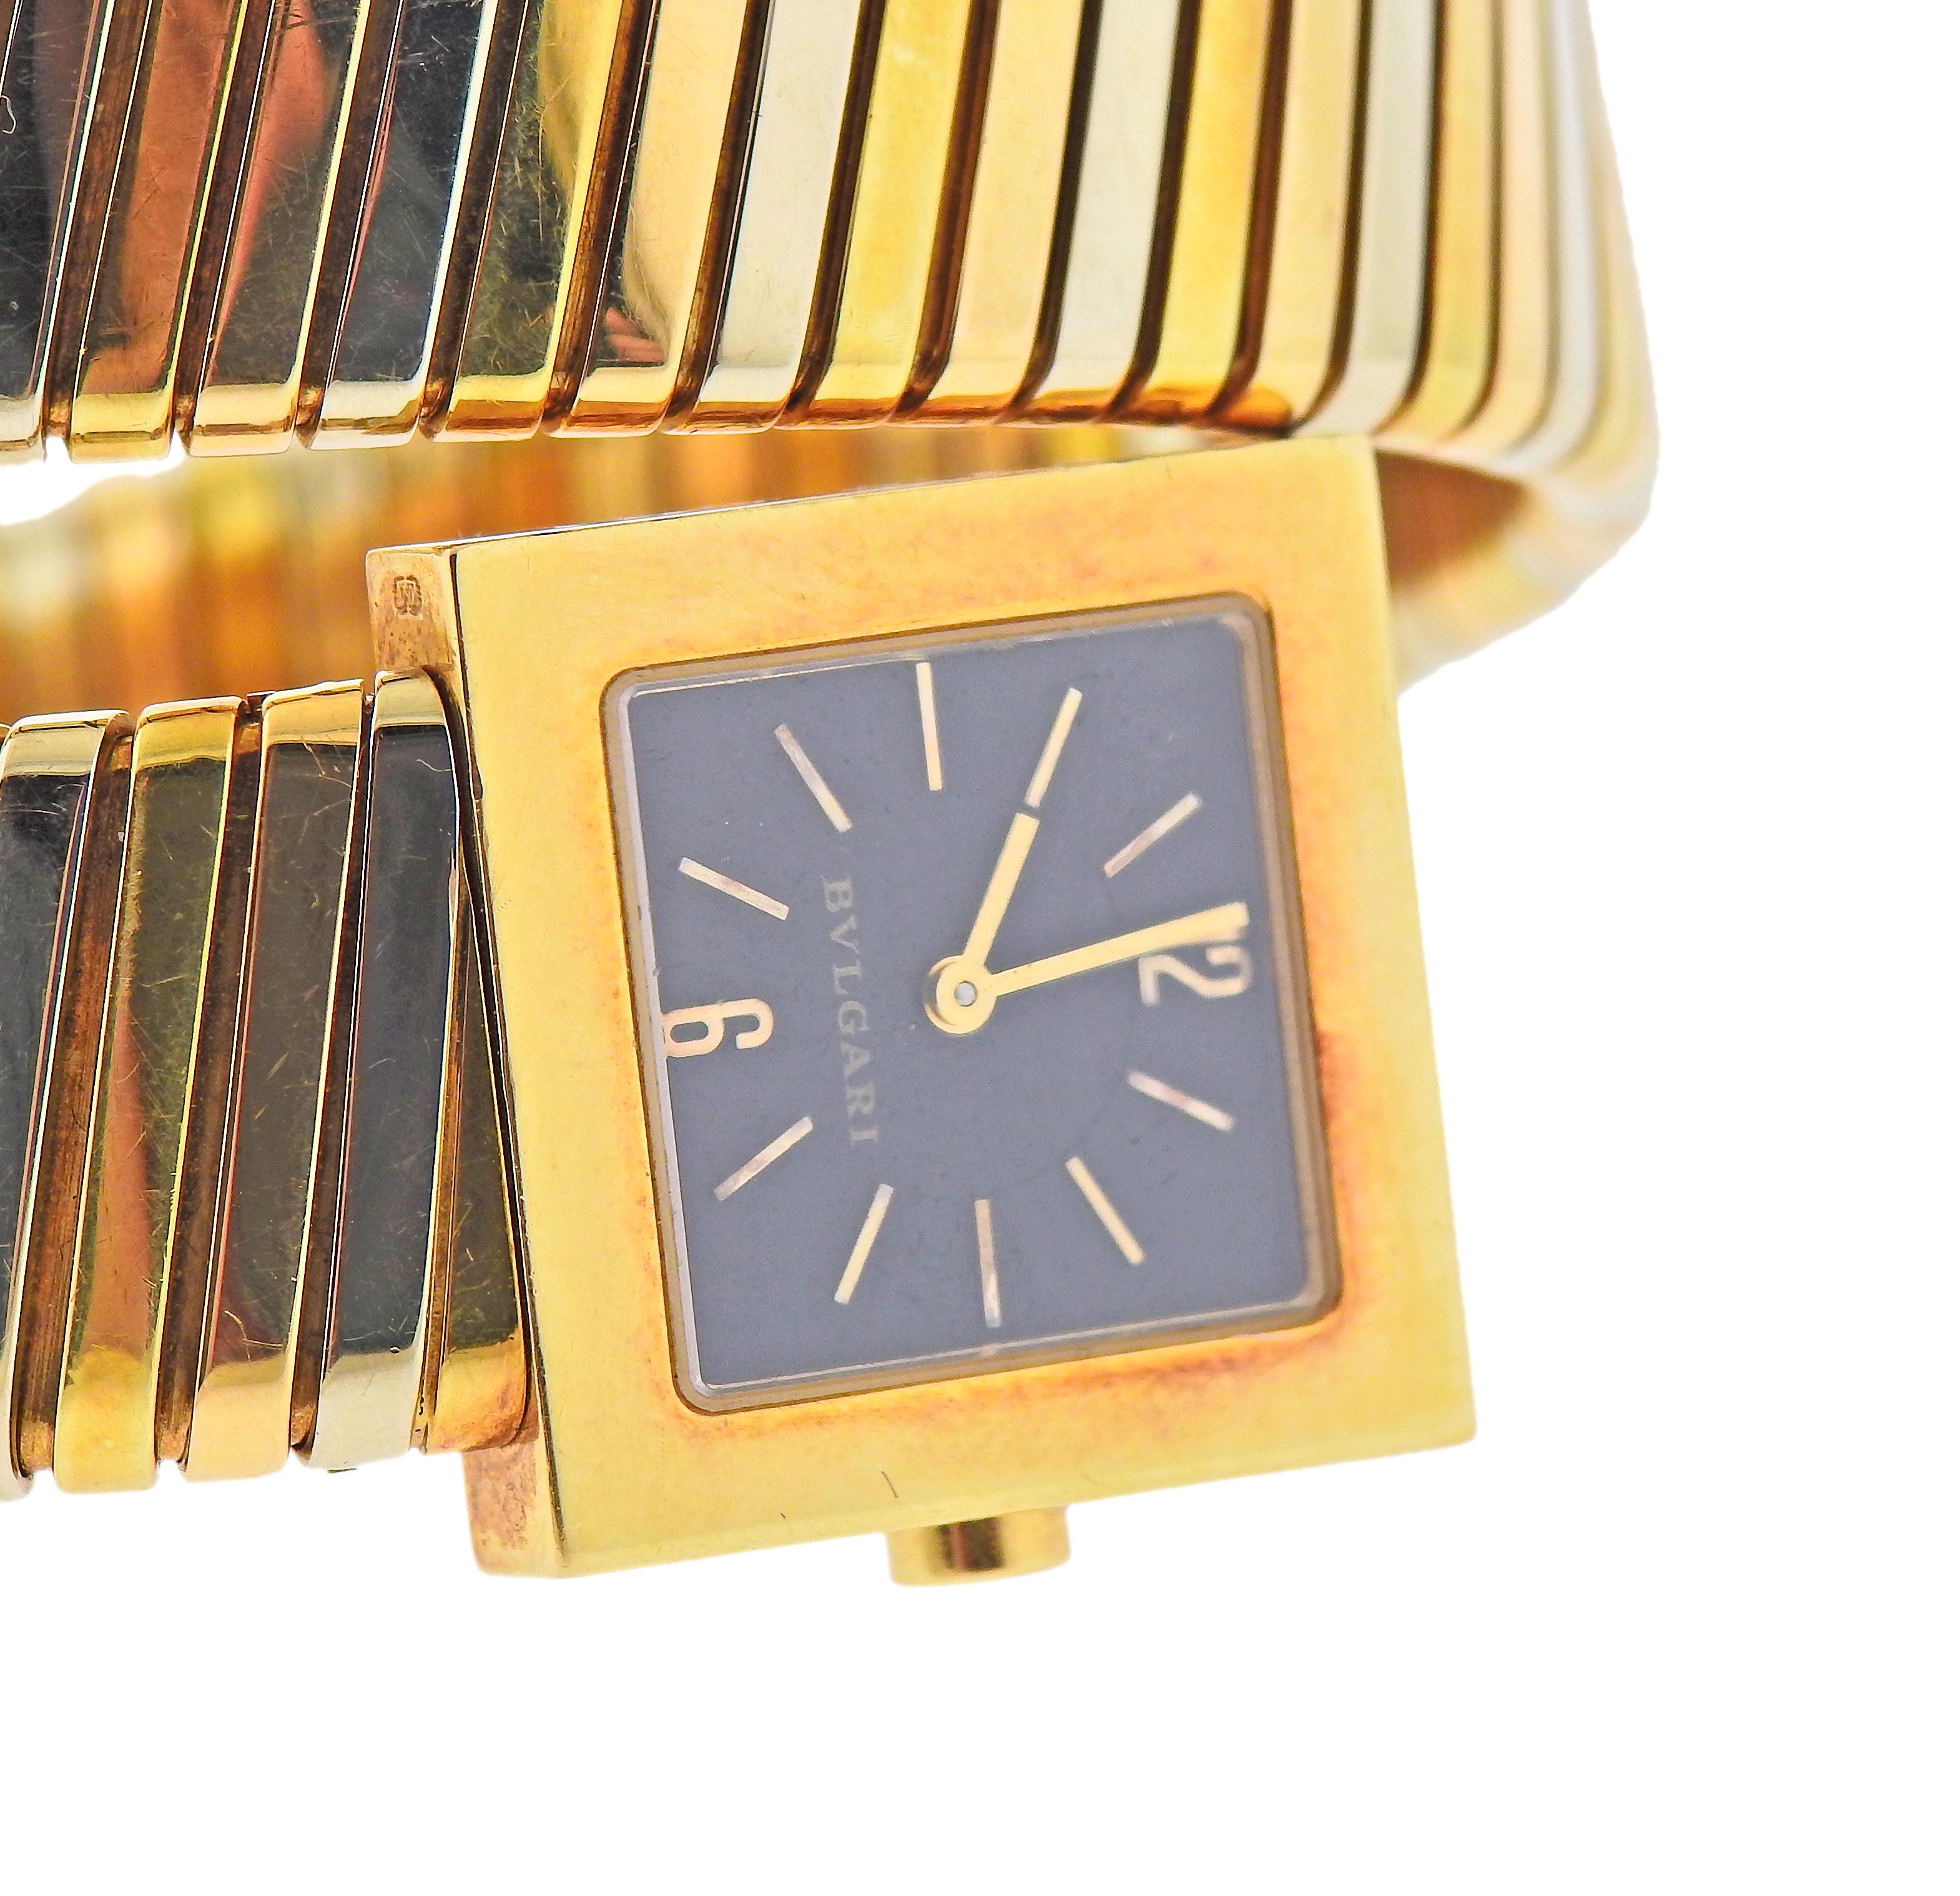 Montre bracelet Tubogas classique en or tricolore 18k de Bvlgari, avec cadran noir et mouvement à quartz. Le bracelet convient à un poignet moyen de 6,5 à 7 pouces. La largeur du bracelet est de 1,5